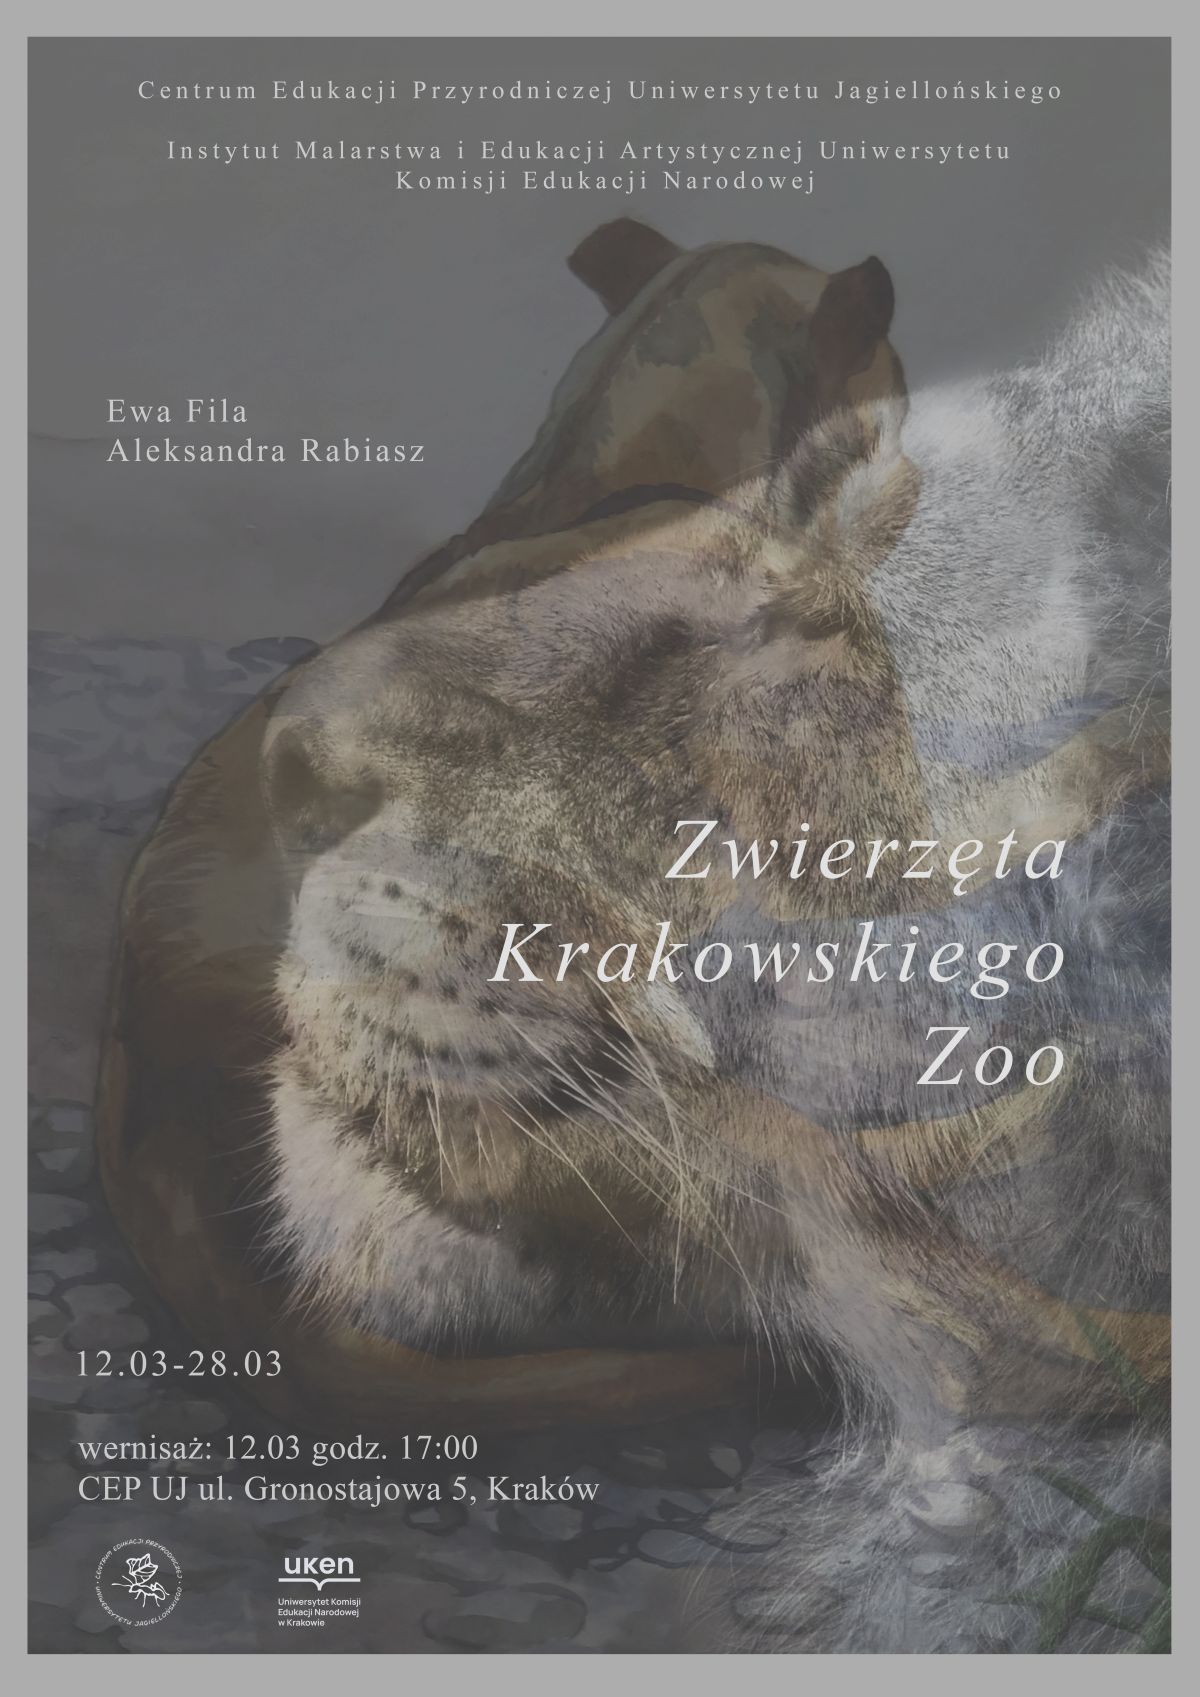 Wystawa "Zwierzęta Krakowskiego Zoo", Ewa Fila (fotografia) i Aleksandra Rabiasz (akwarele)